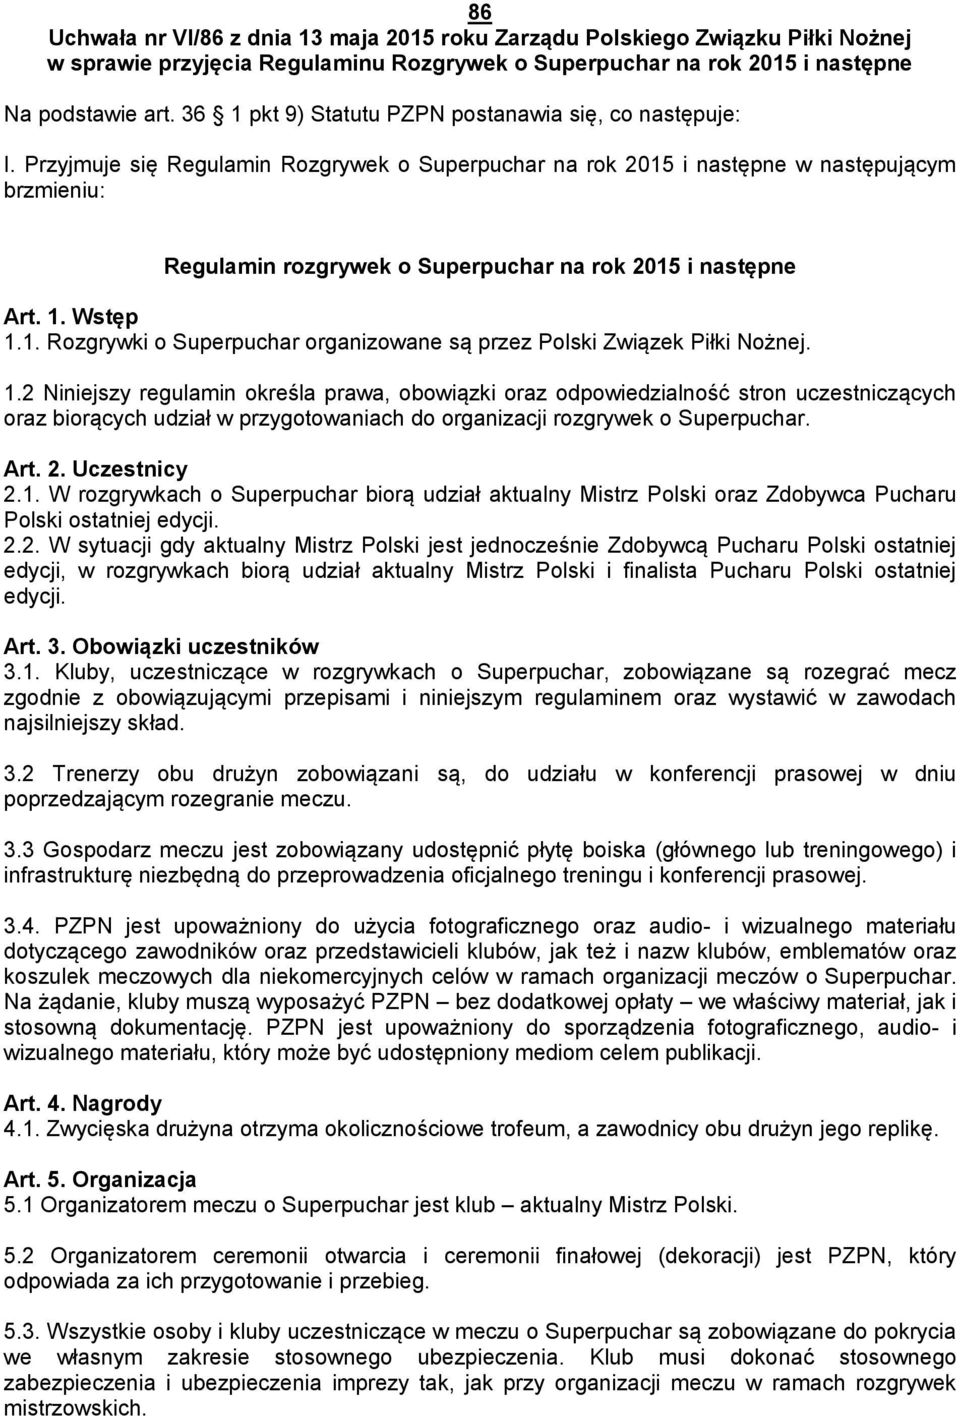 Przyjmuje się Regulamin Rozgrywek o Superpuchar na rok 2015 i następne w następującym brzmieniu: Regulamin rozgrywek o Superpuchar na rok 2015 i następne Art. 1. Wstęp 1.1. Rozgrywki o Superpuchar organizowane są przez Polski Związek Piłki Nożnej.